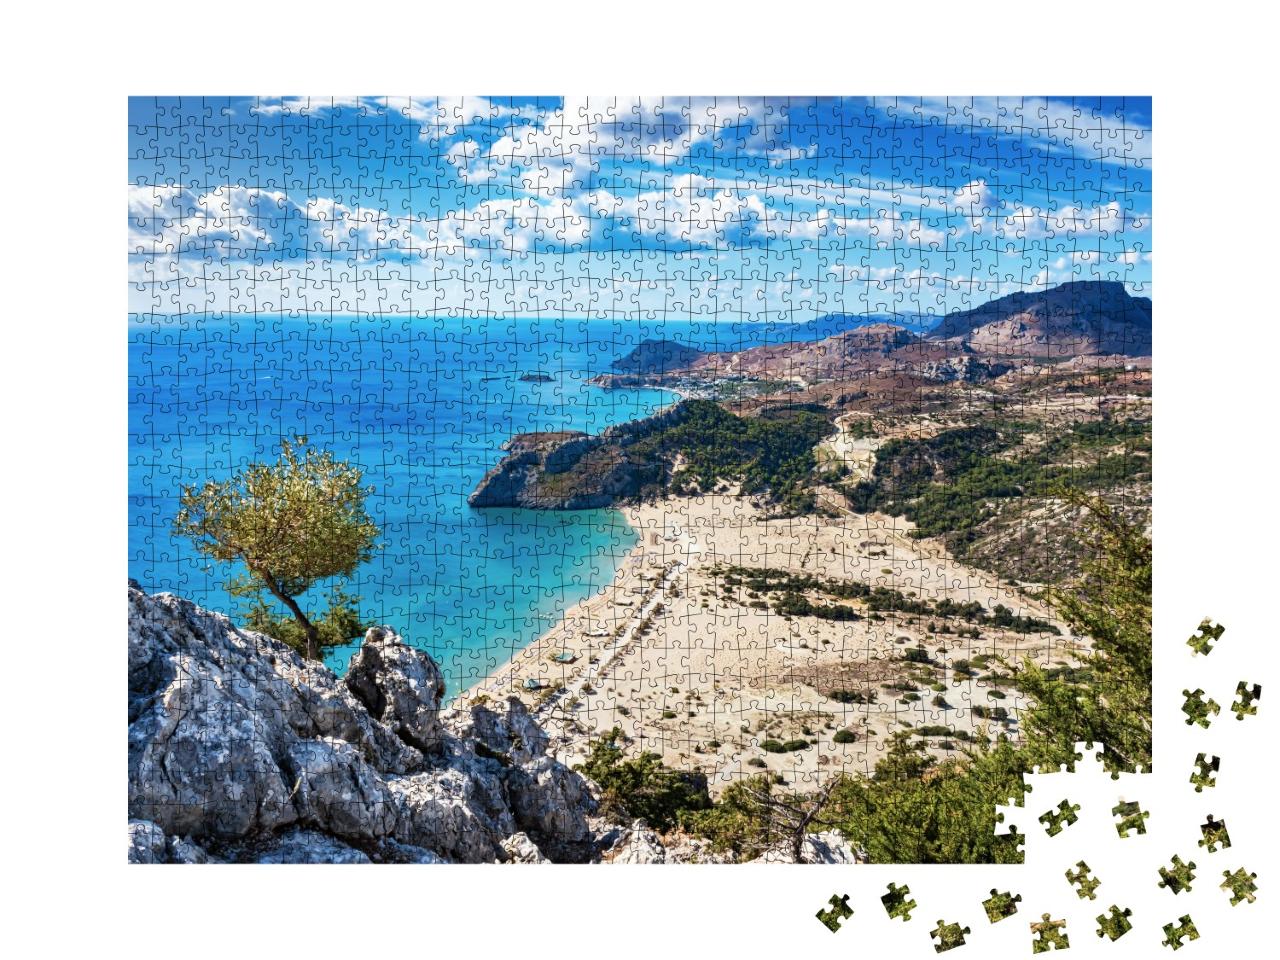 Puzzle de 1000 pièces « Plage de sable doré : Tsambika, Rhodes, Grèce »